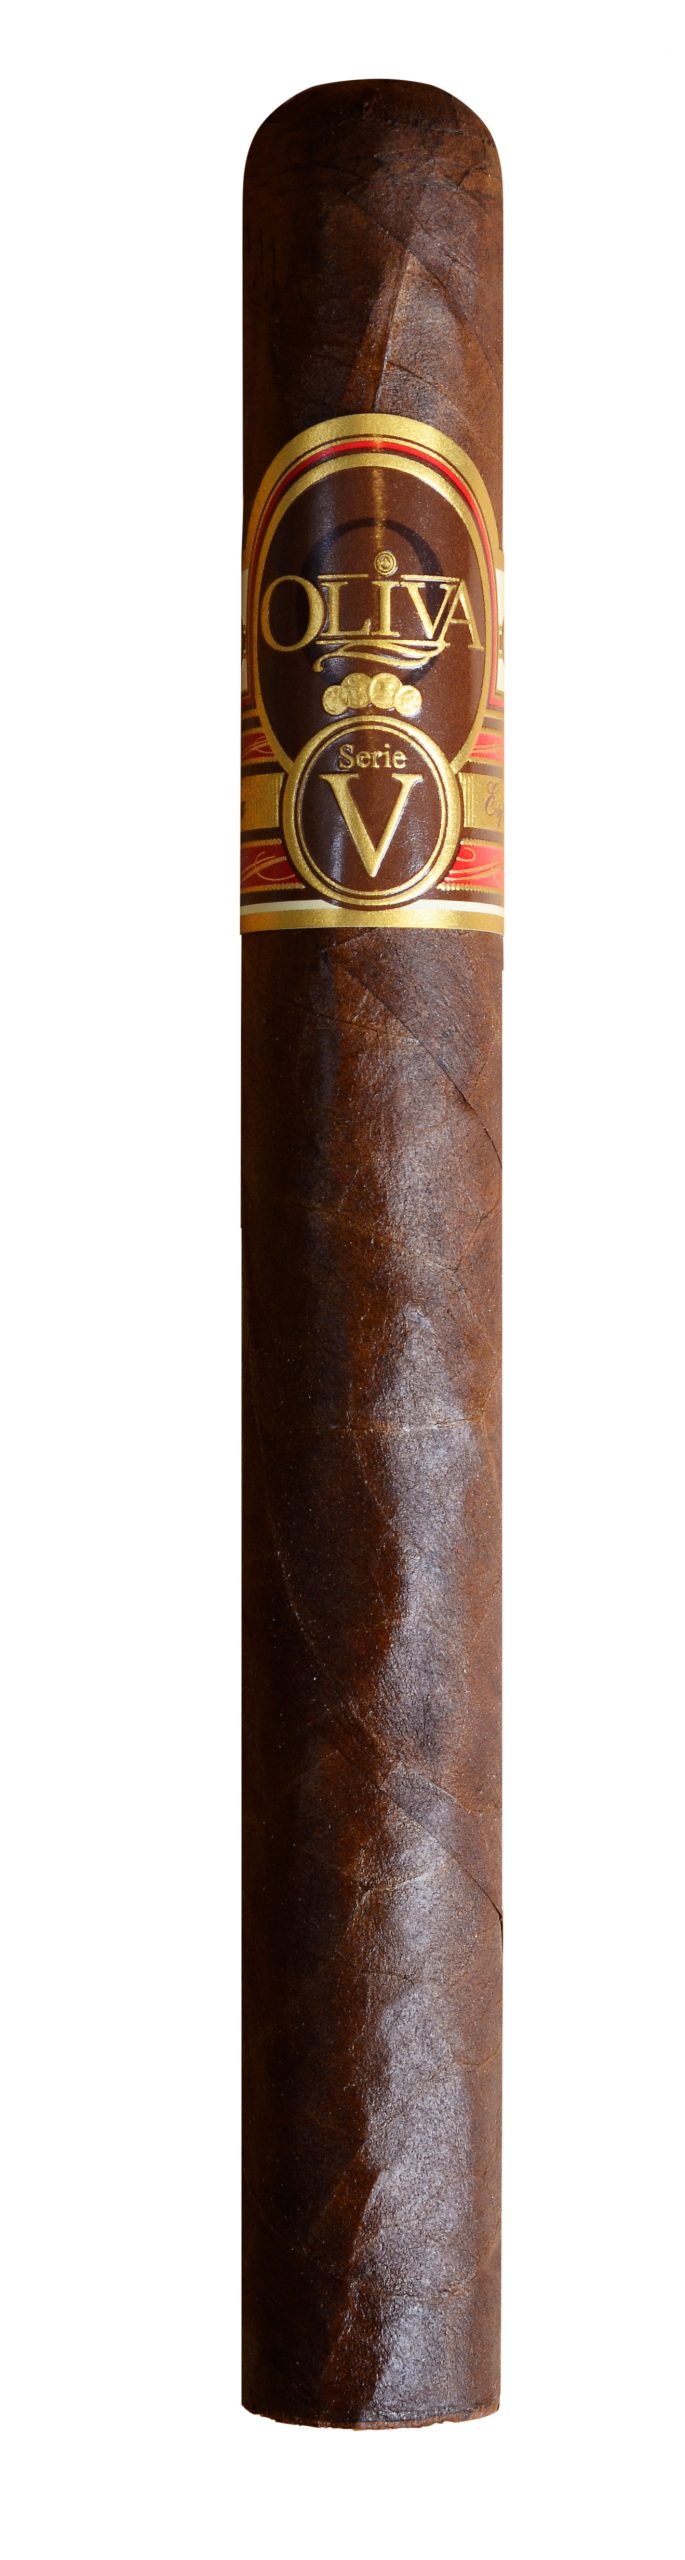 oliva serie v churchill single cigar